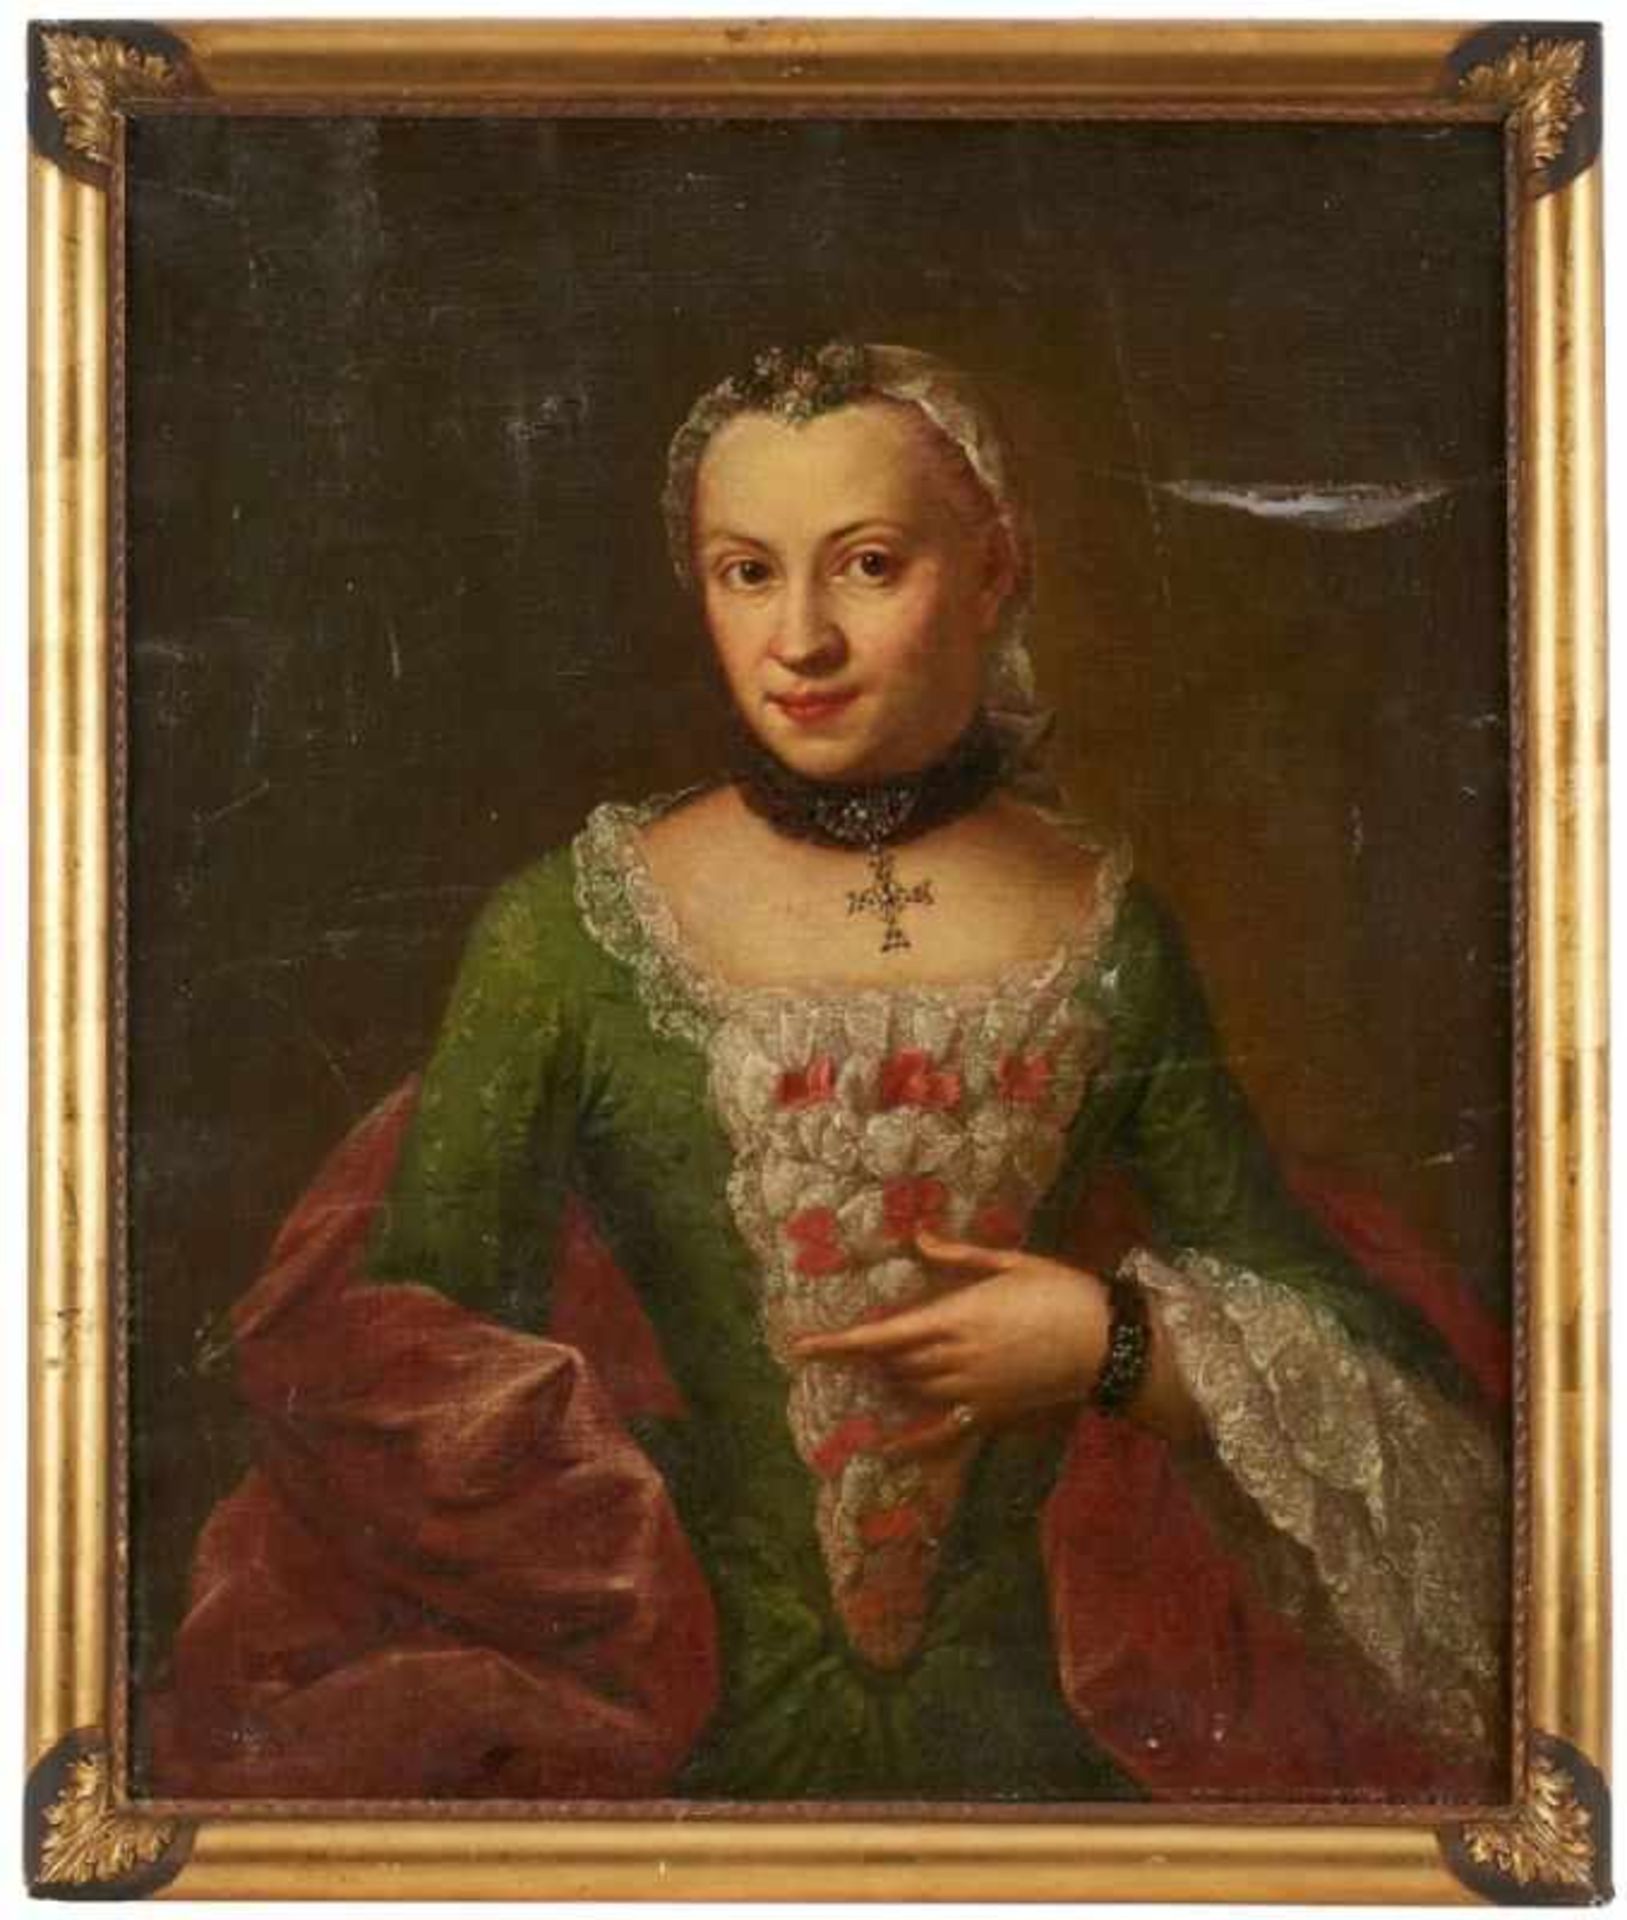 Gemälde Bildnismaler 18.Jh."Porträt einer edlen, jungen Dame" Öl/Lwd., 83 x 69 cm, Defekt